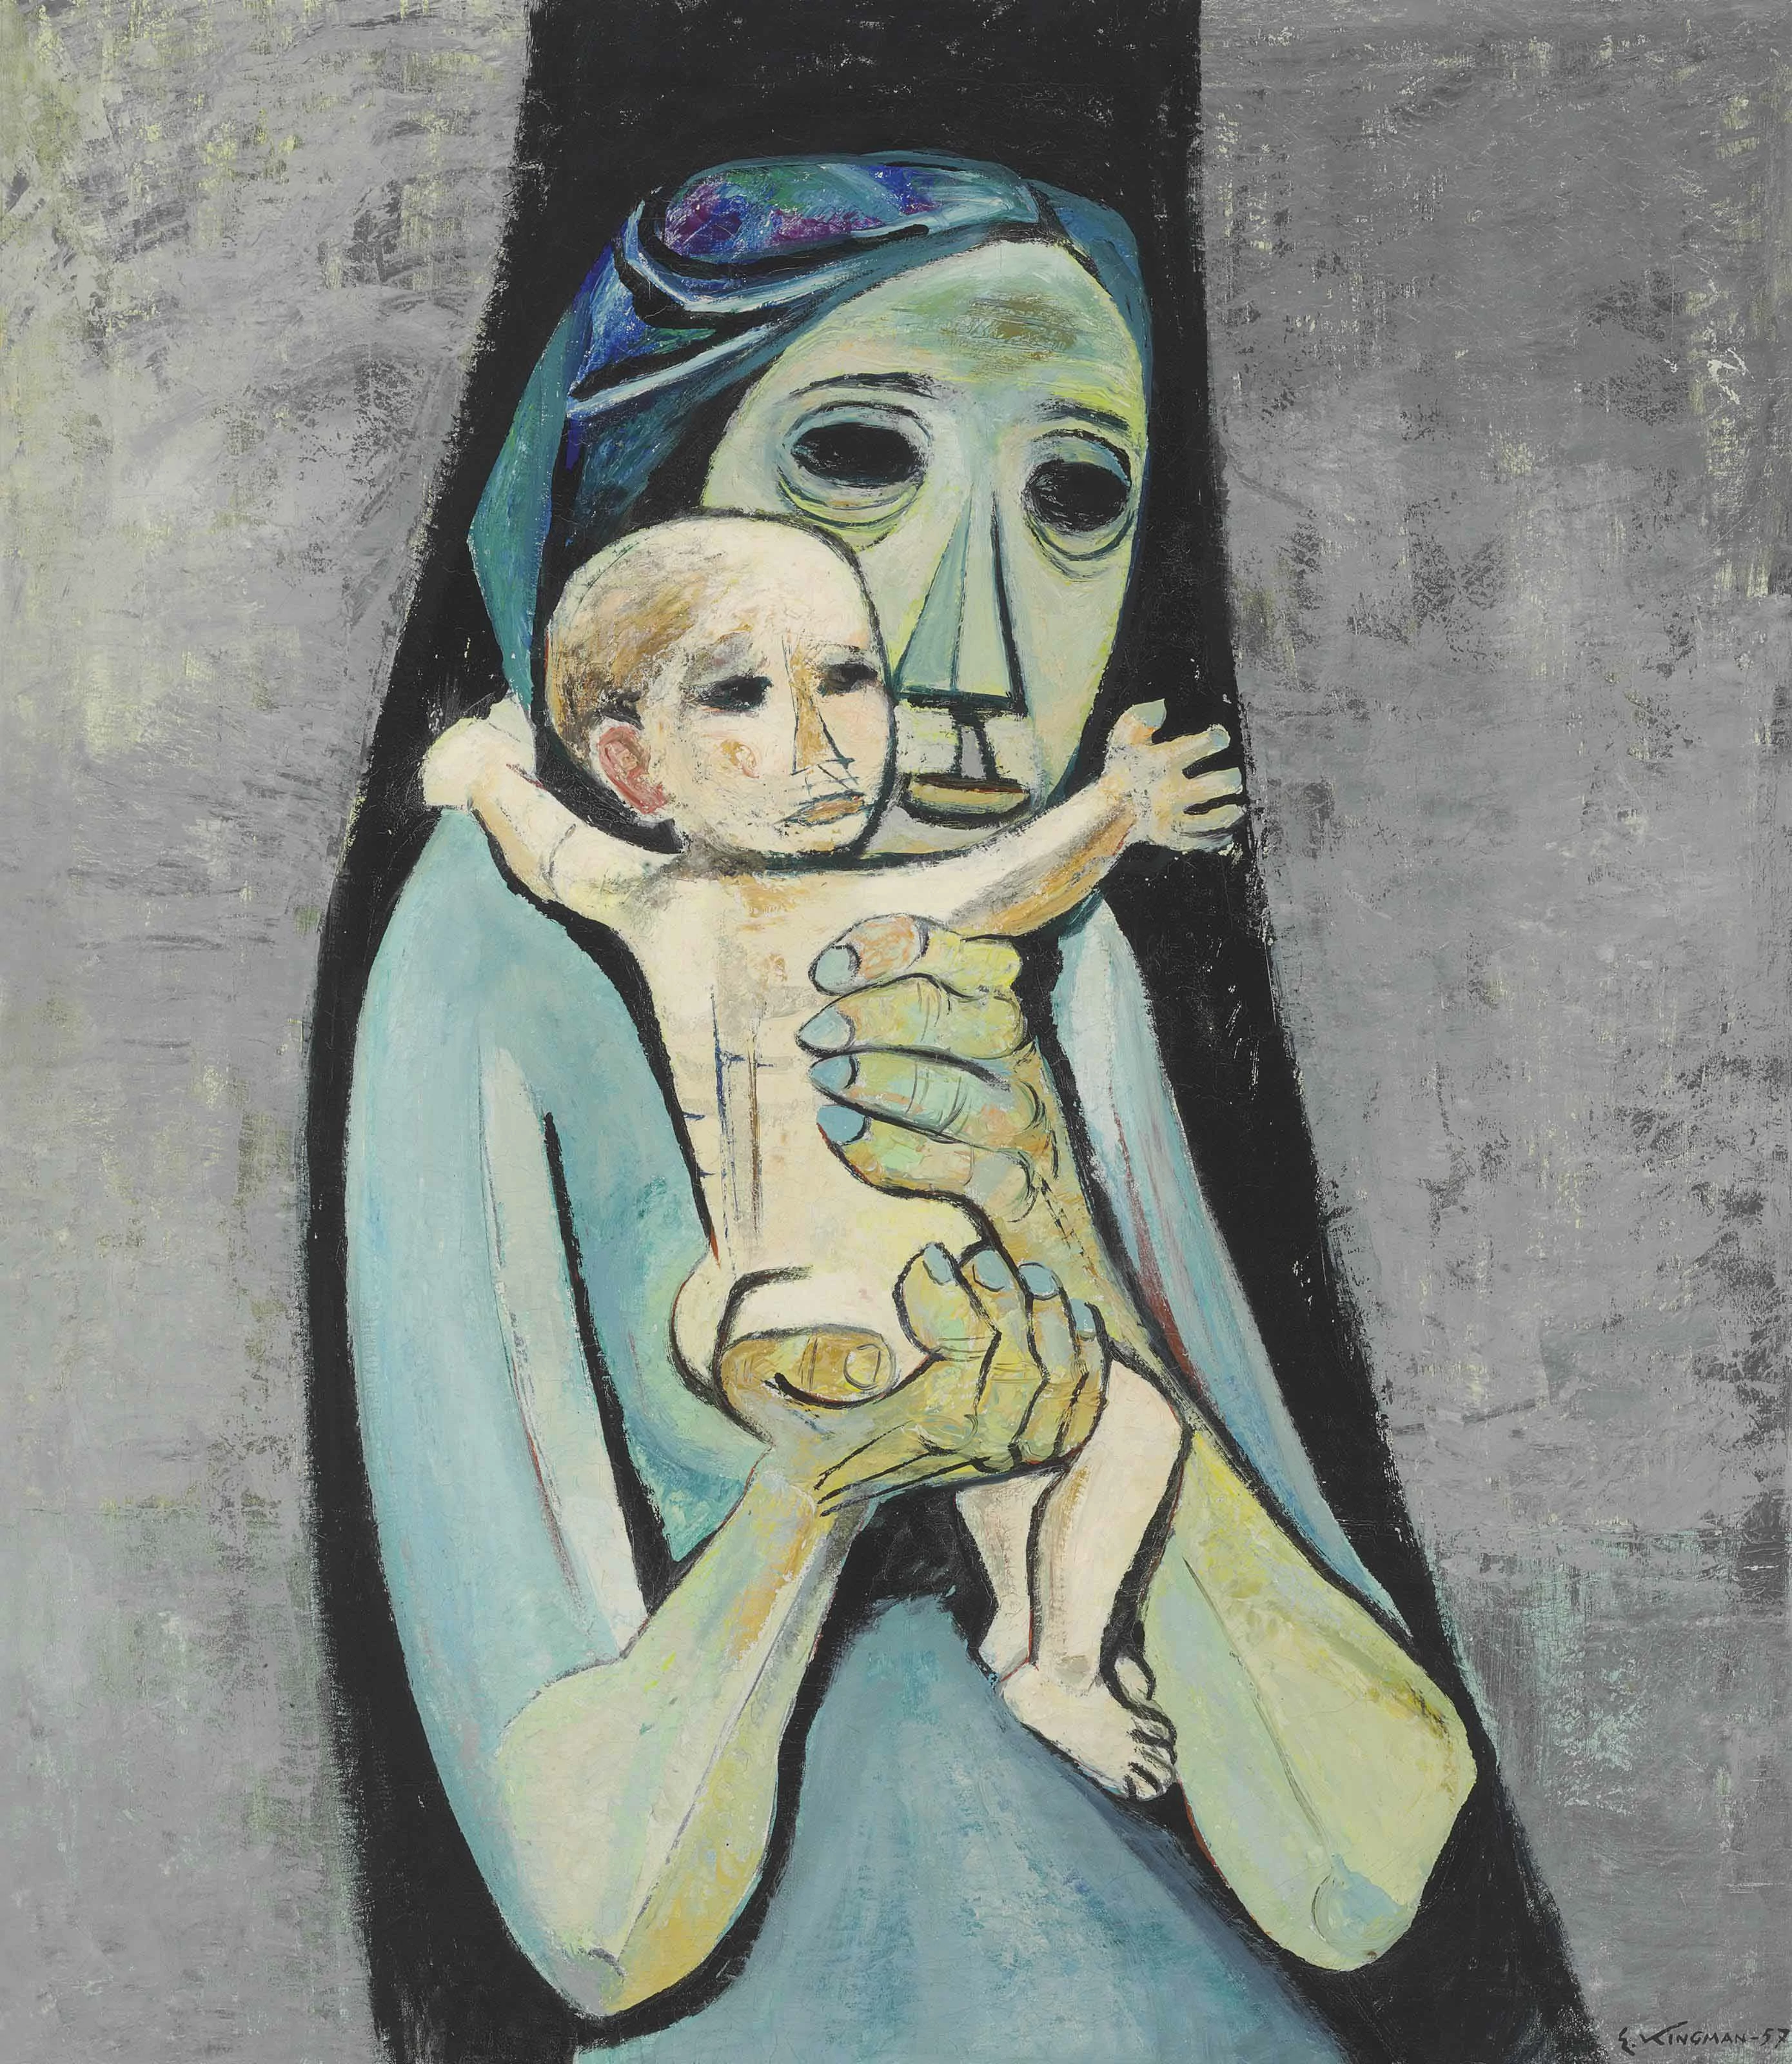 Mother and Child, Eduardo Kingman